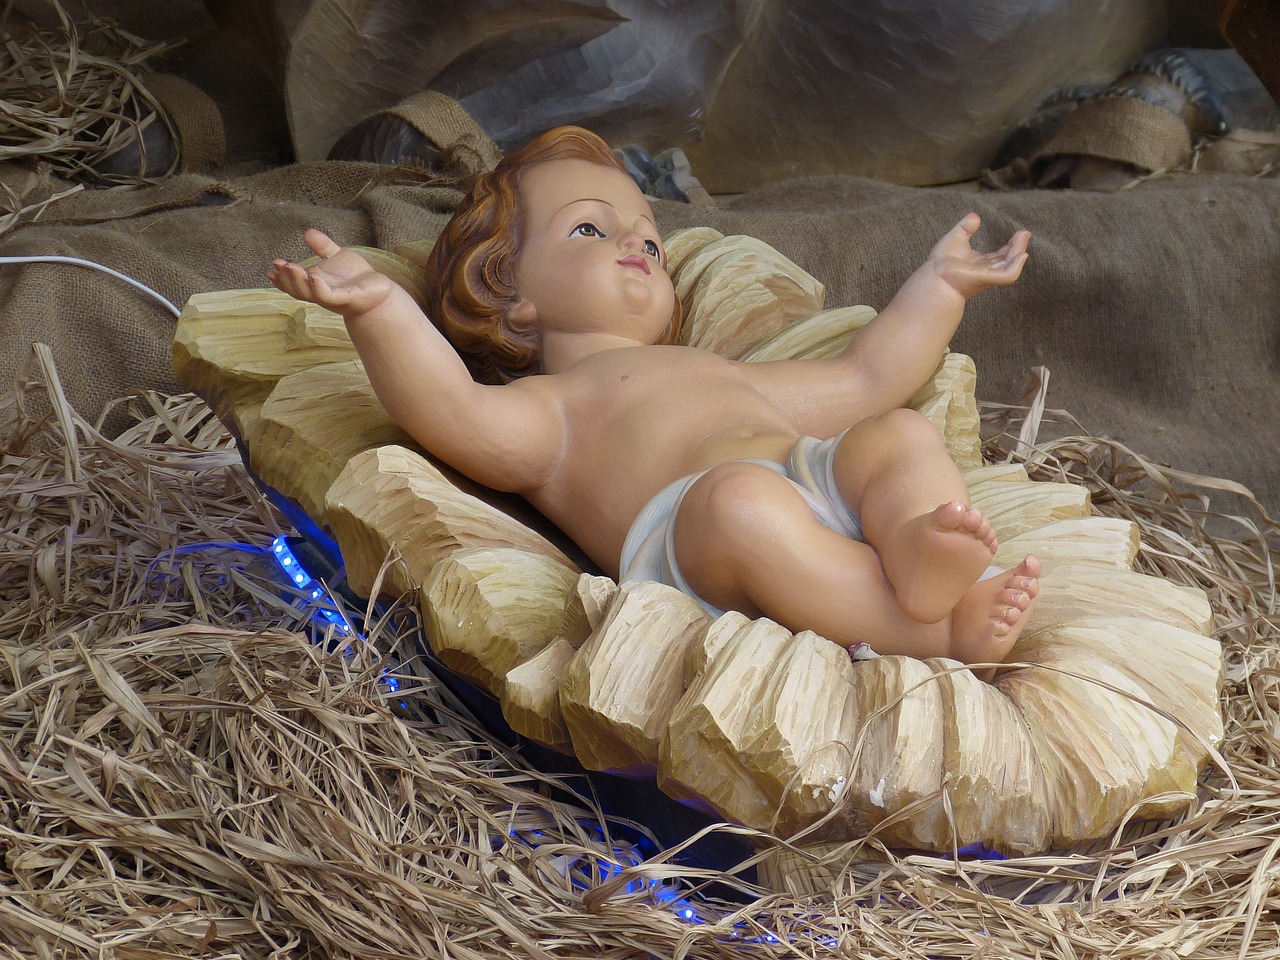 The baby Jesus